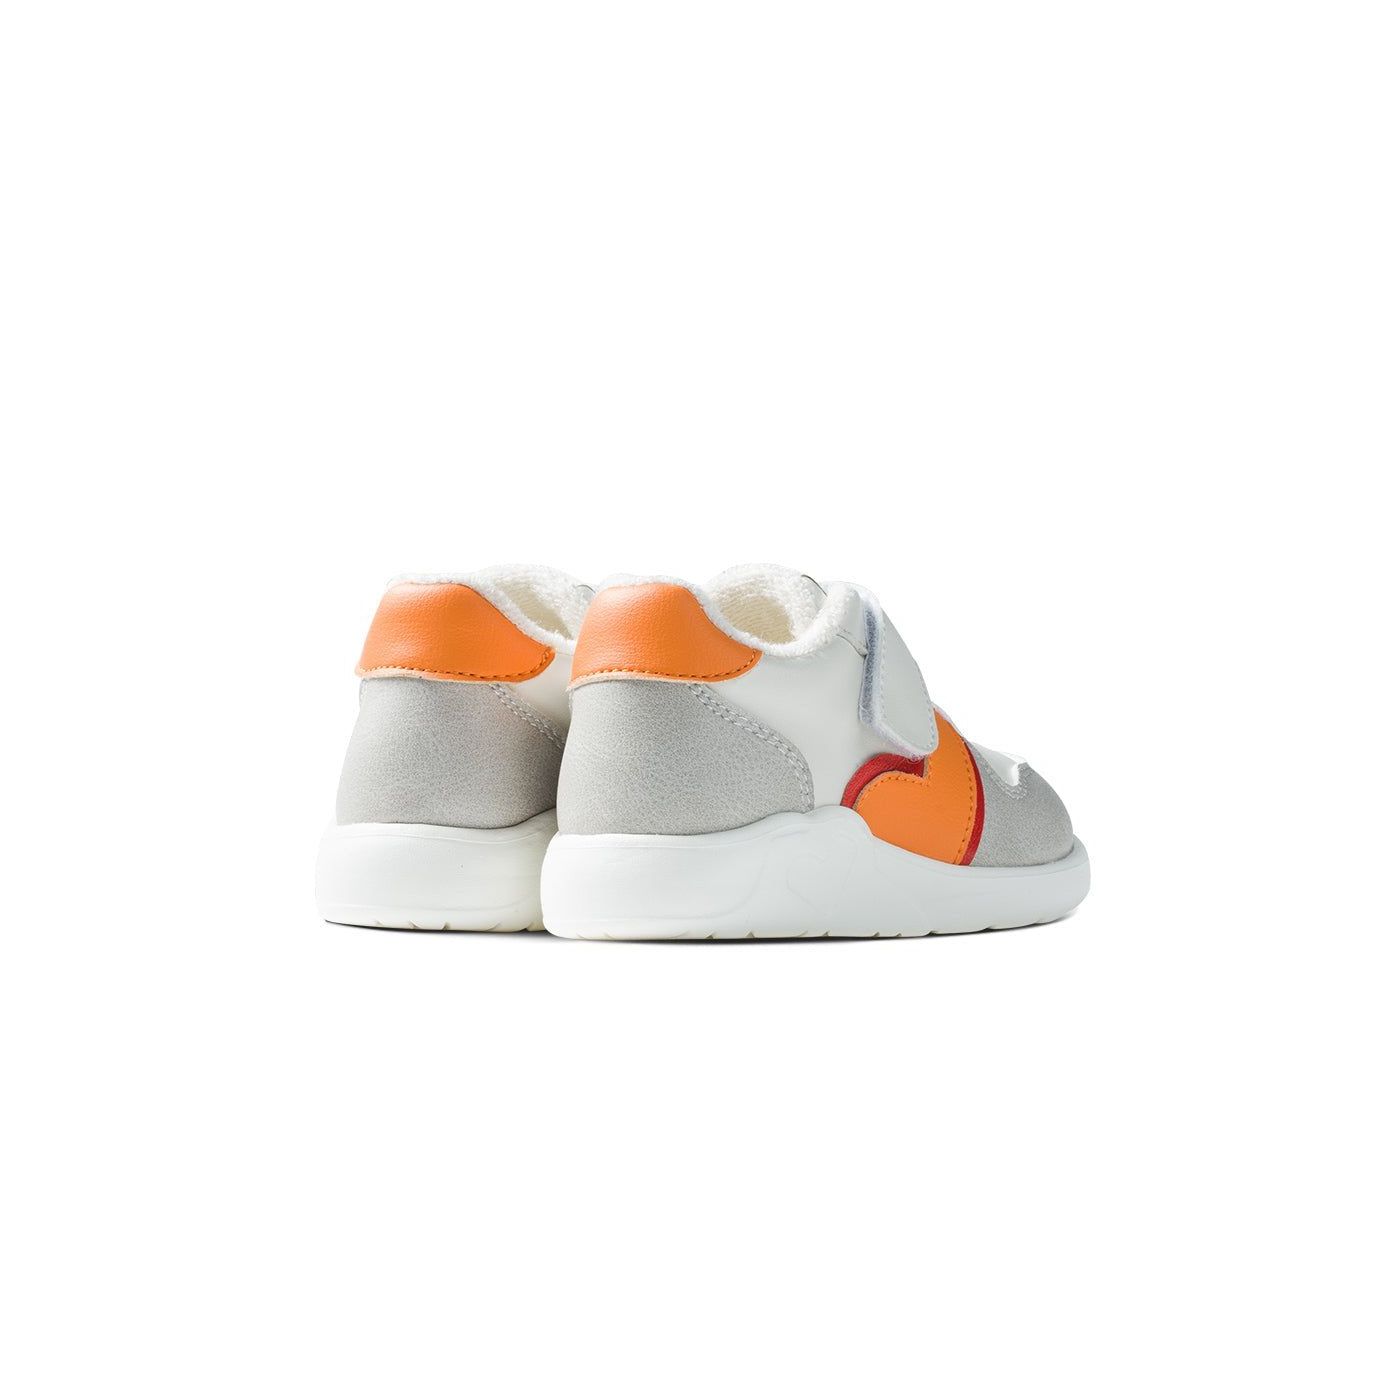 Fleece Room Soft Sole Anti-slip Pre-walker Orange Baby Sneakers - 0cm